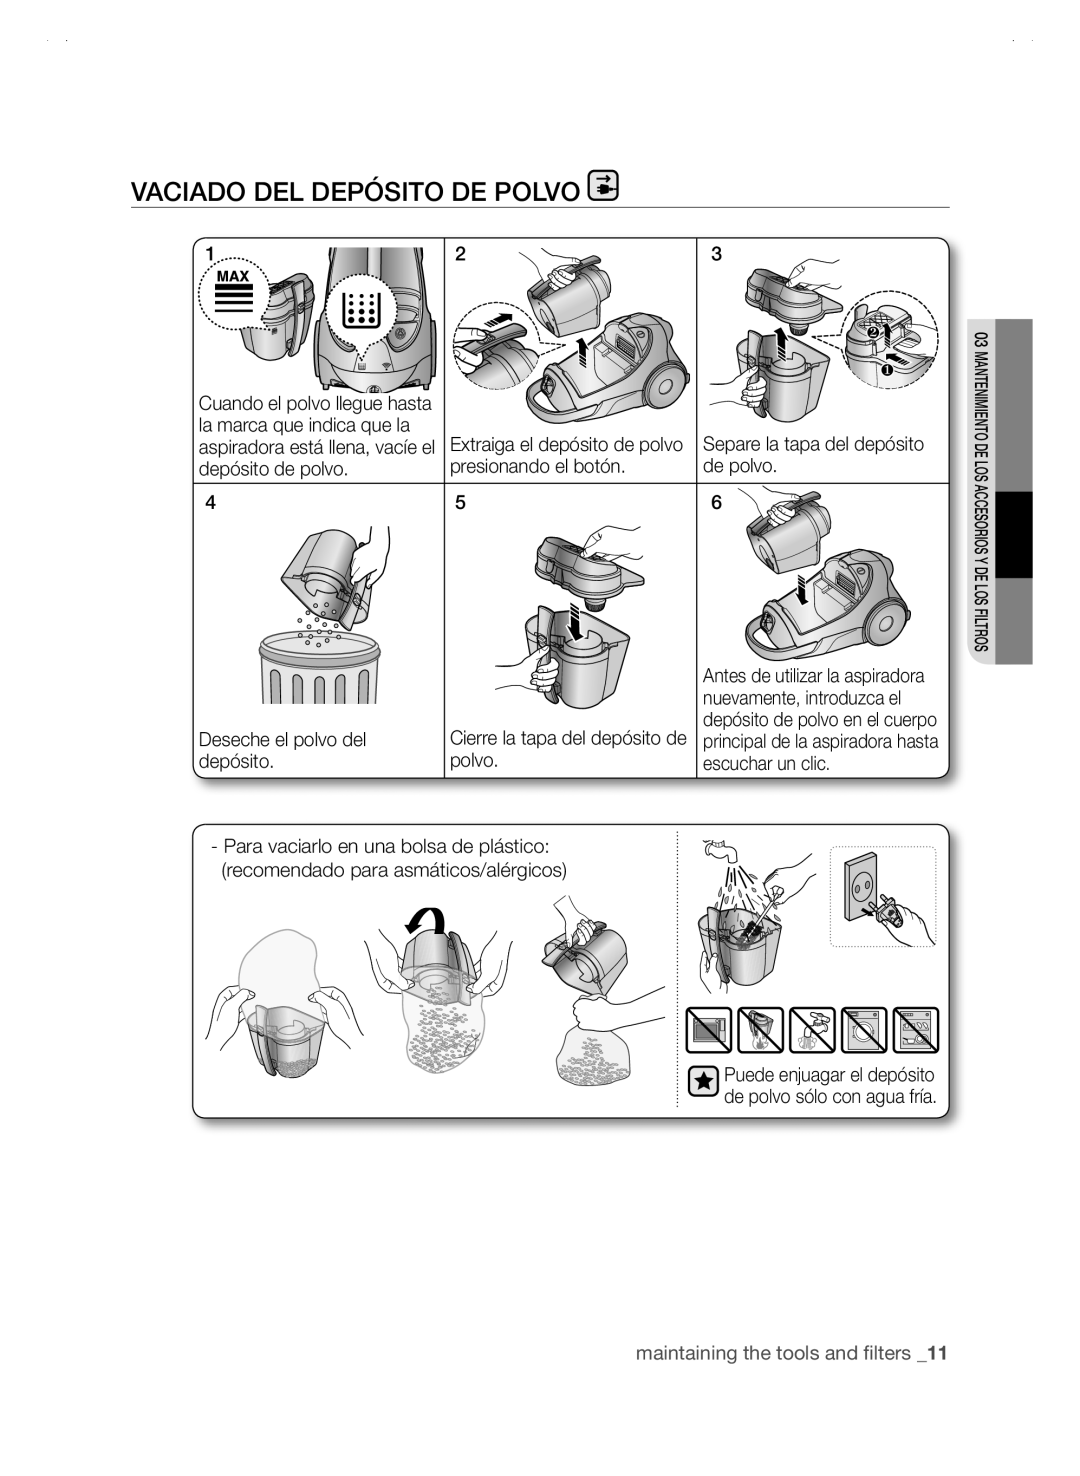 Samsung SC88P user manual vaciado del depósito de polvo, maintaining the tools and filters _11 